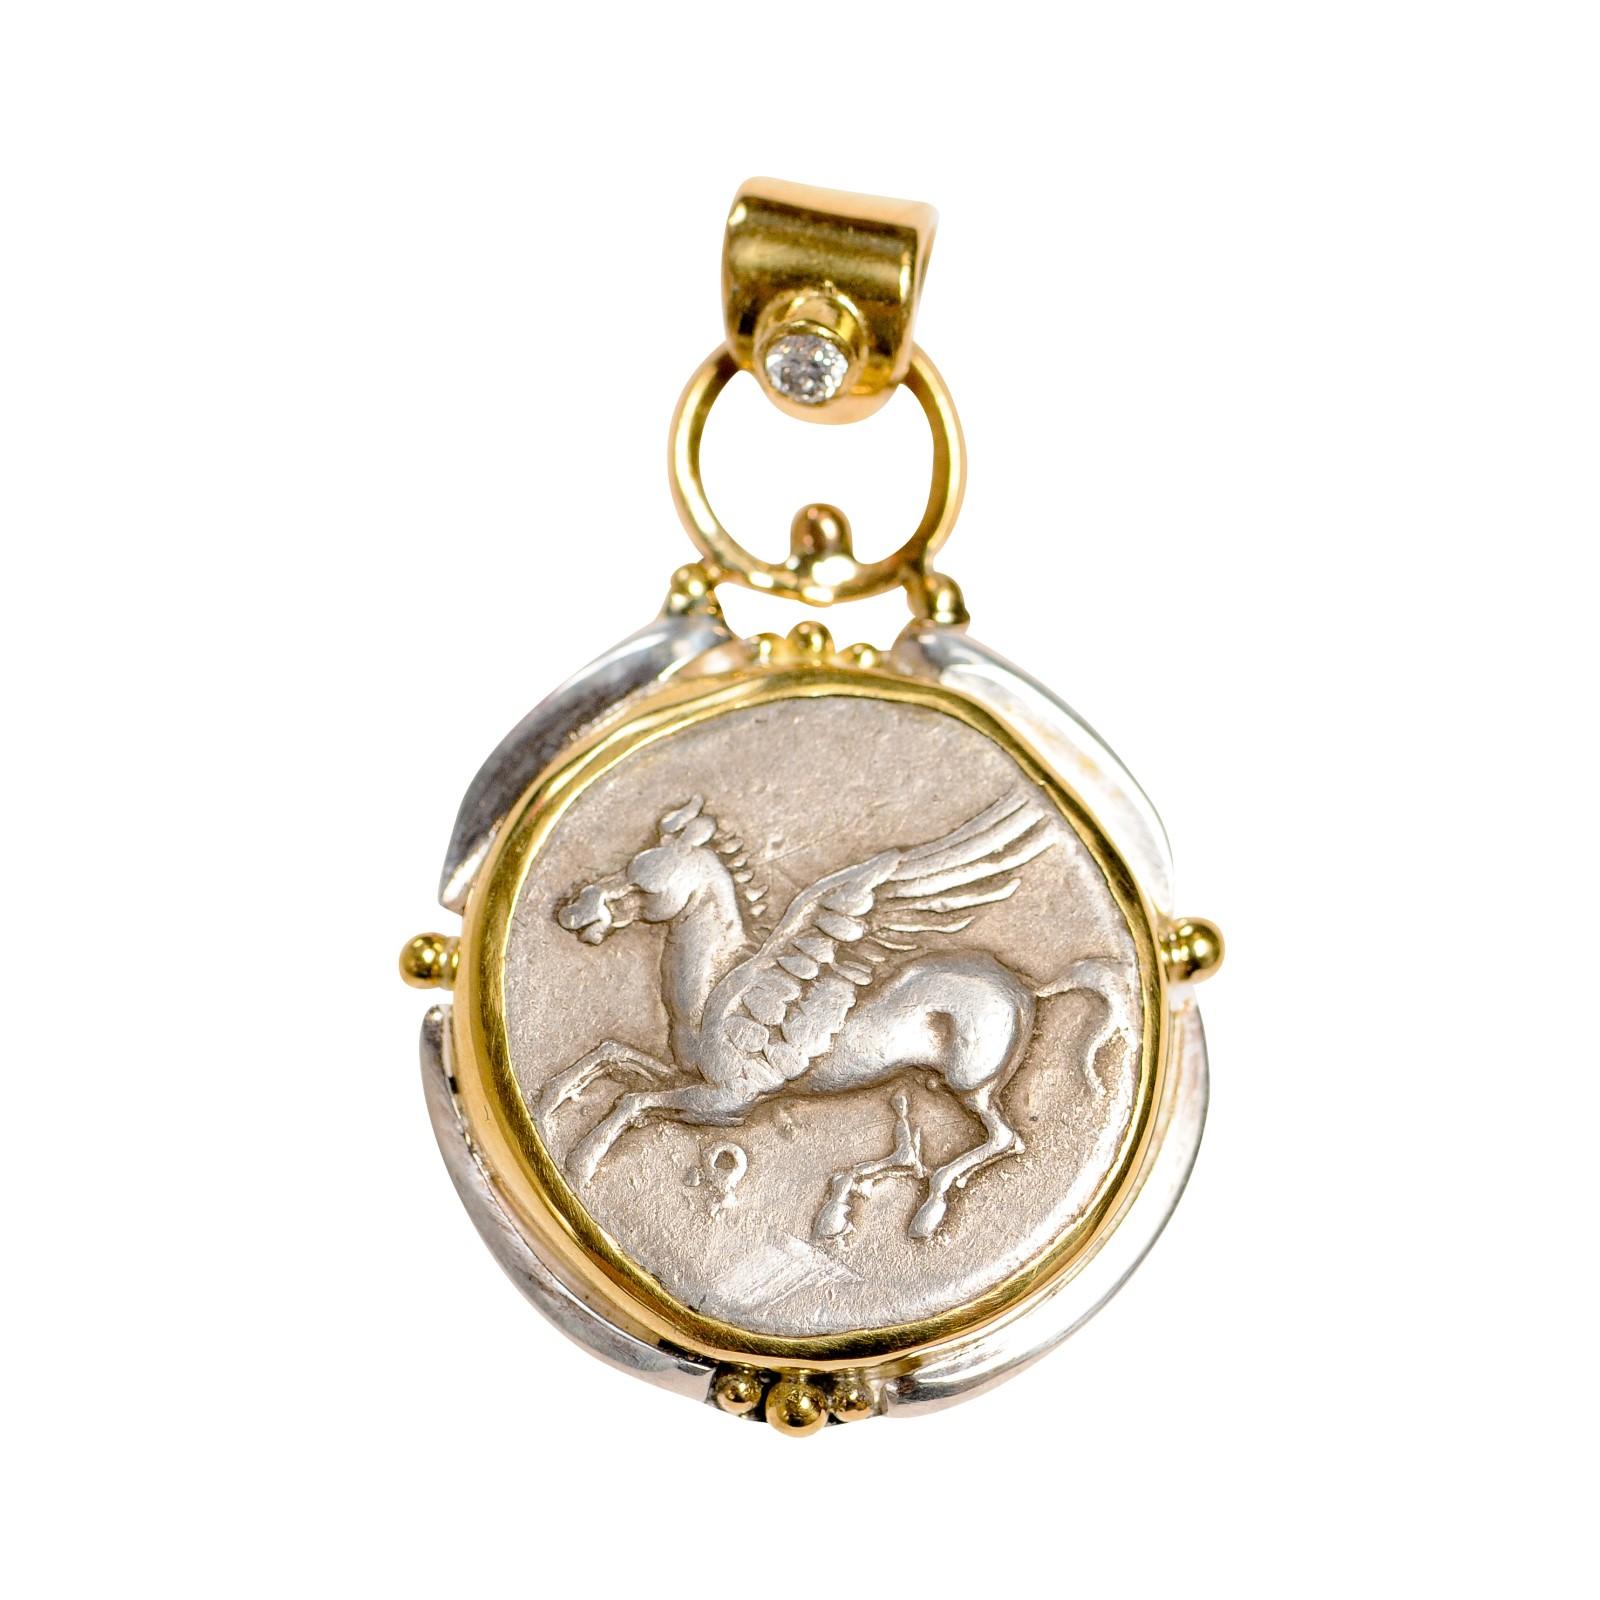 Eine authentische KORINTH Silber Stater Münze (ca. 386-307 v. Chr.), in einem benutzerdefinierten 22k Gold und Sterling Silber Lünette mit einem 22k Gold Bügel (die einen Diamanten Akzent hat) gesetzt. Die Vorderseite dieser Münze zeigt Pegasus im